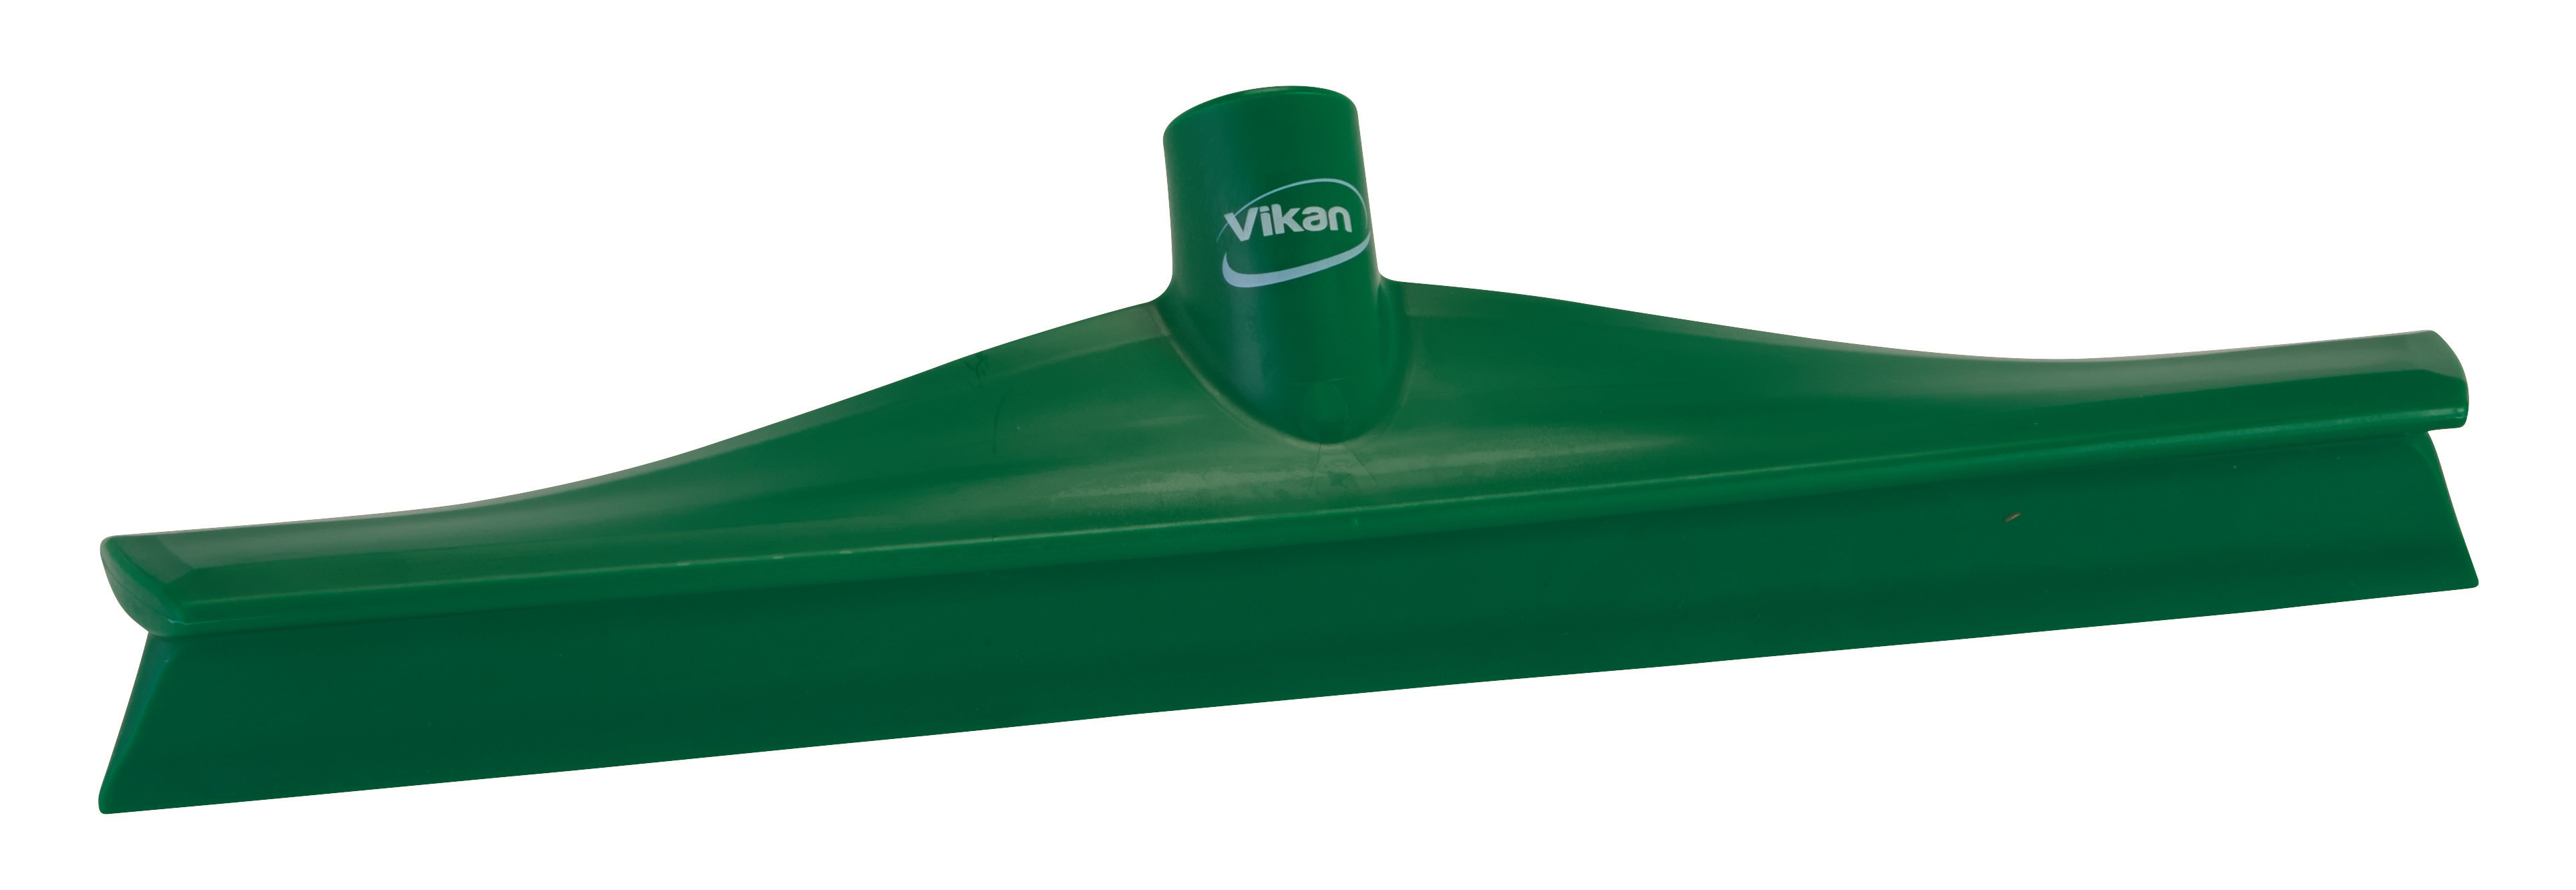 Billede af Vikan Skraber Ultra hygiejnisk 400 mm Grøn Enkeltlæbe (71402)